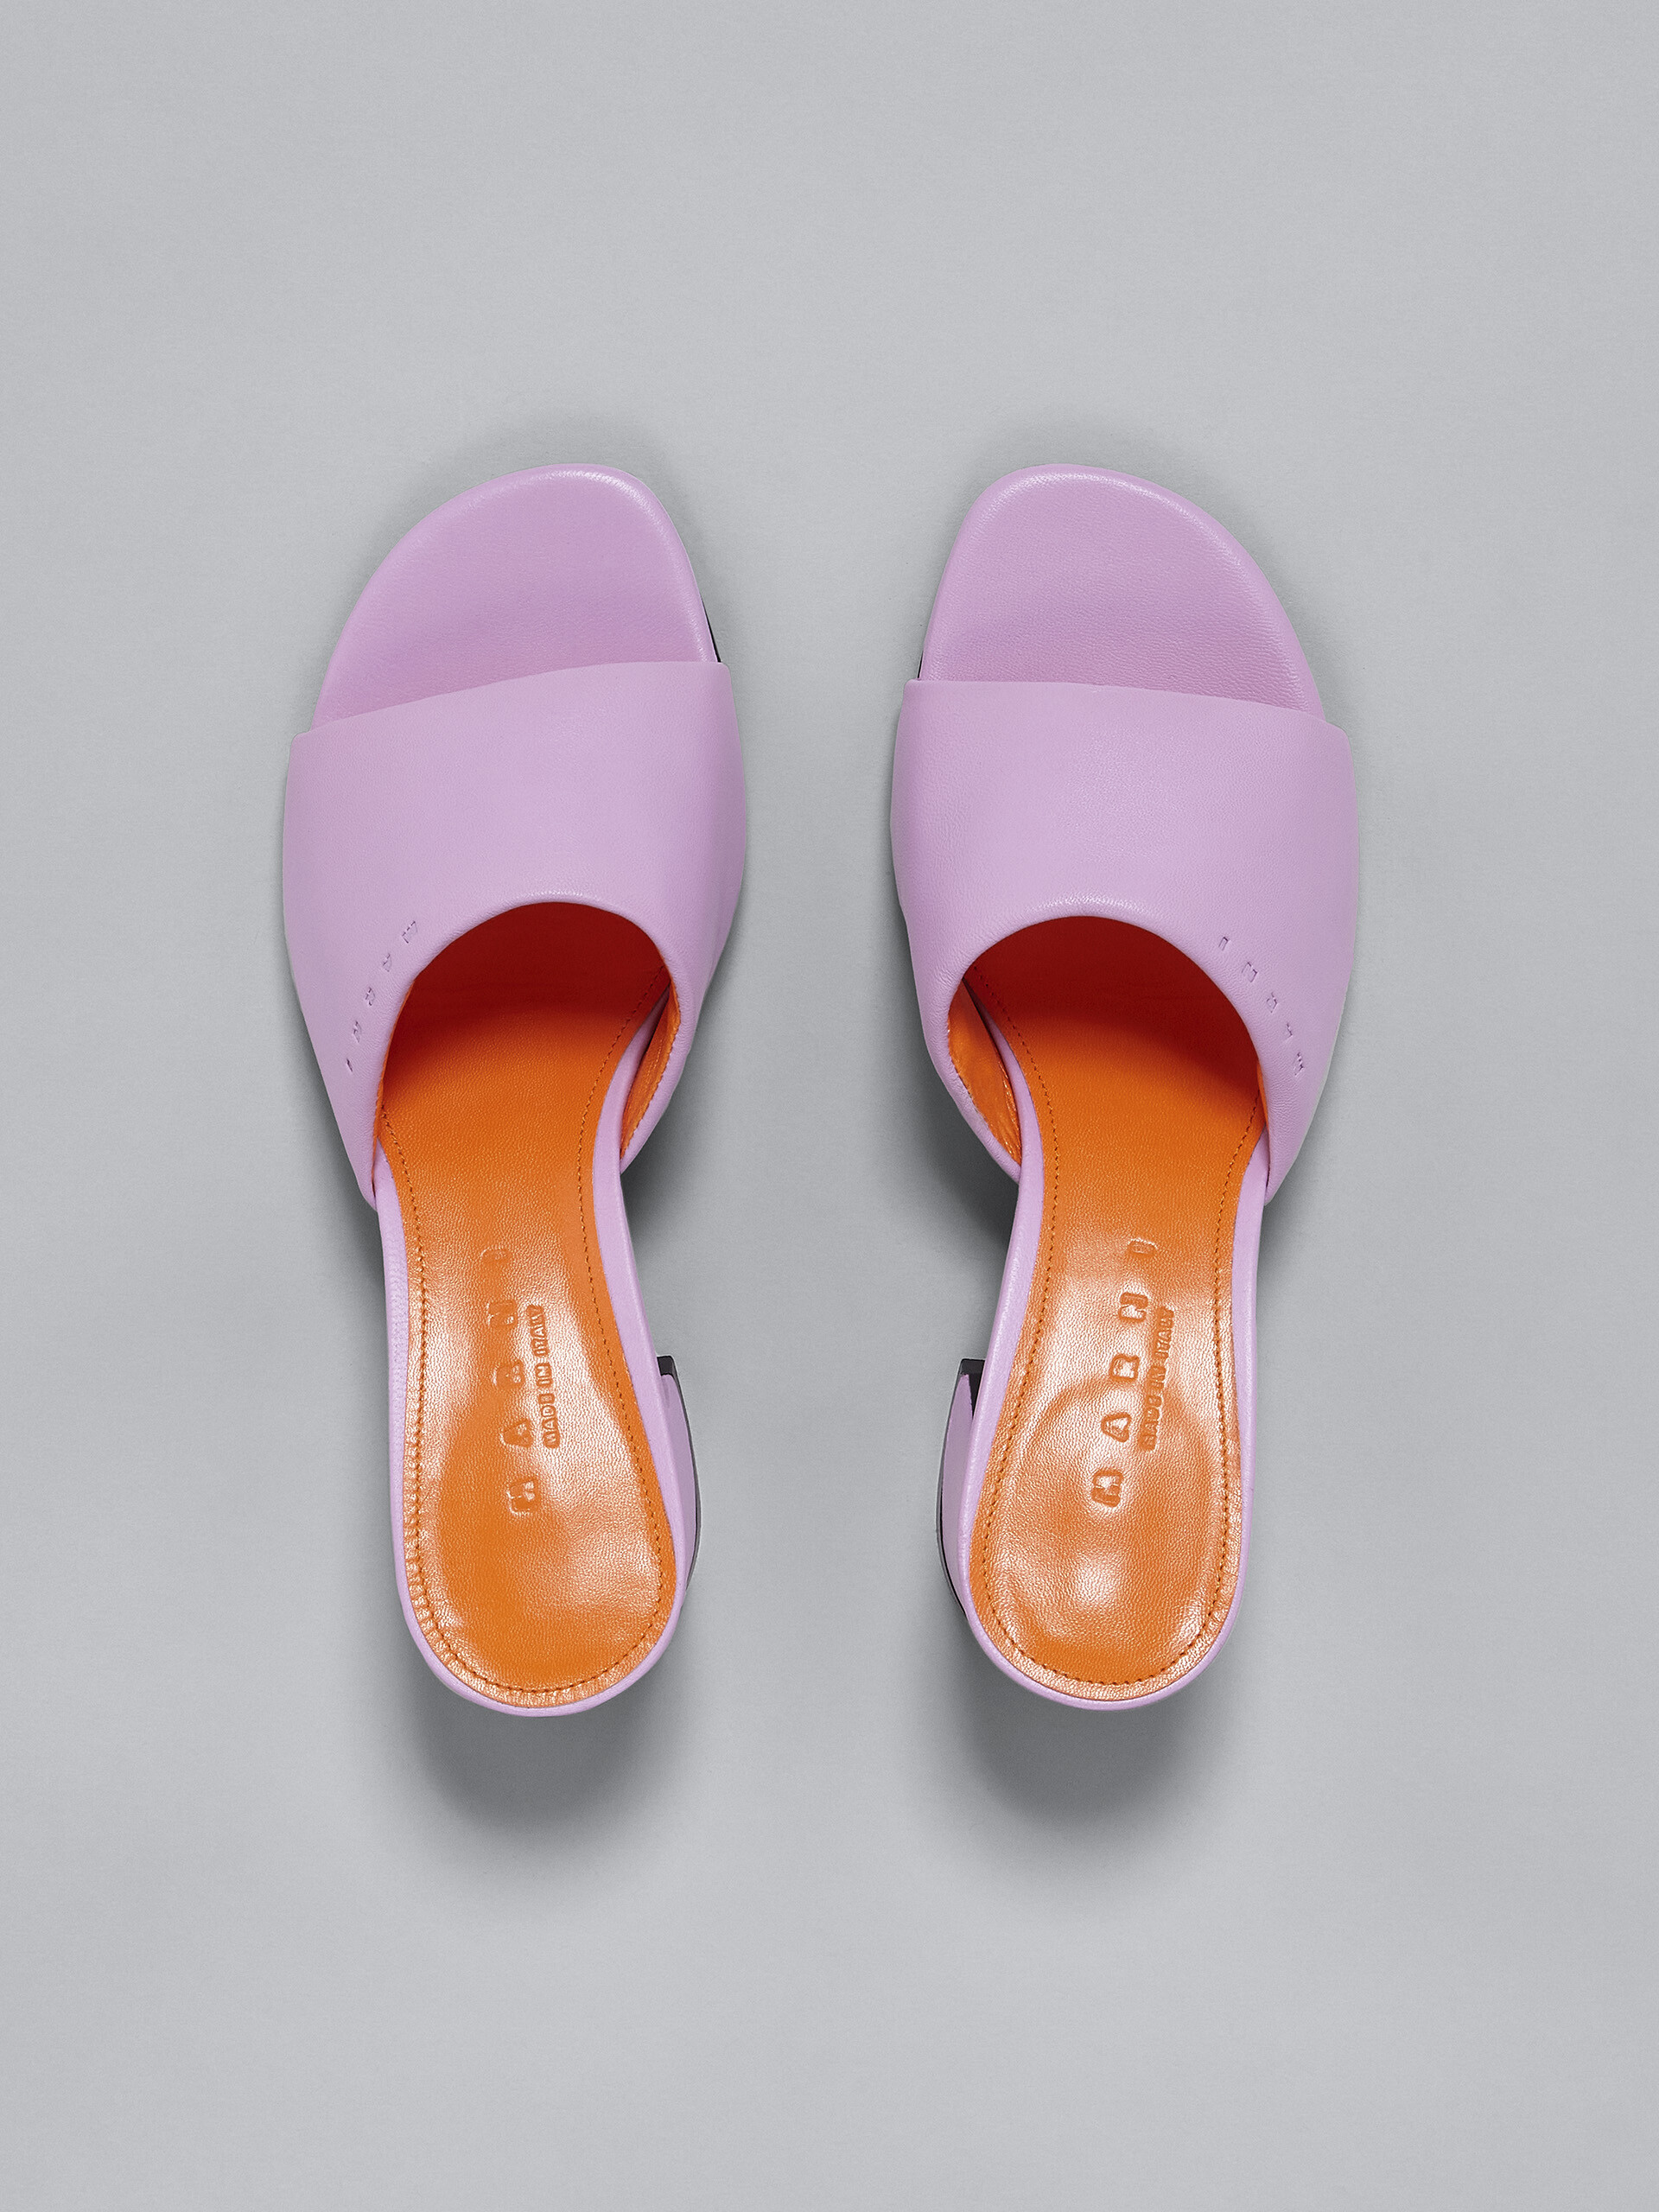 Pink leather sandal - Sandals - Image 4